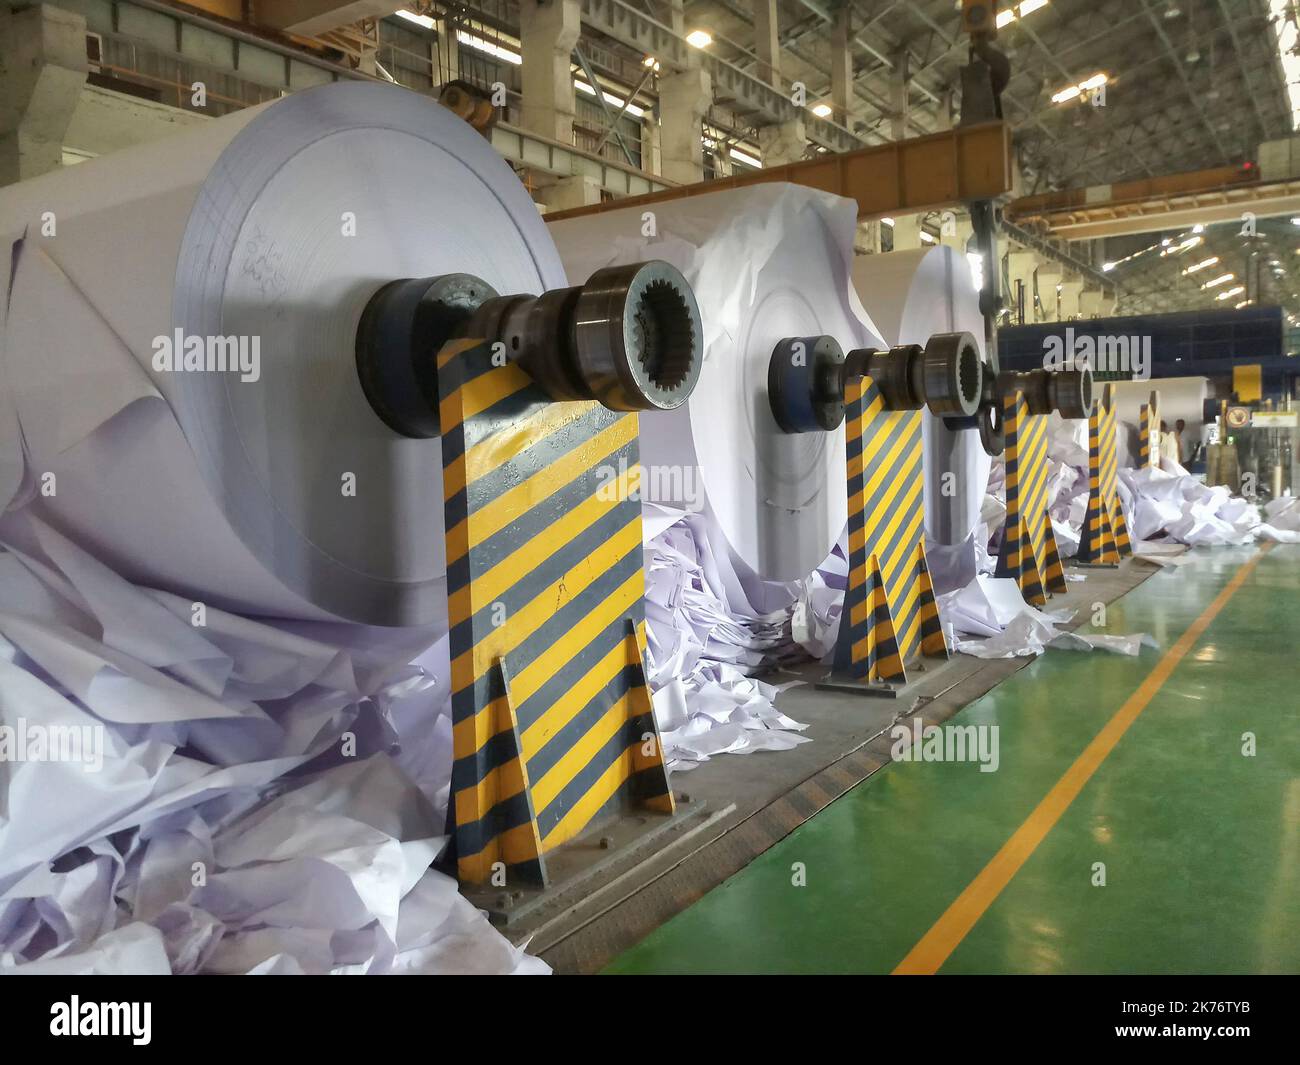 Kolkata, Bengale-Occidental, Inde - 16th mai 2019 : des bobines de Livre blanc sont fabriquées dans une grande usine de fabrication de papier. Image de l'industrie du papier indienne Banque D'Images